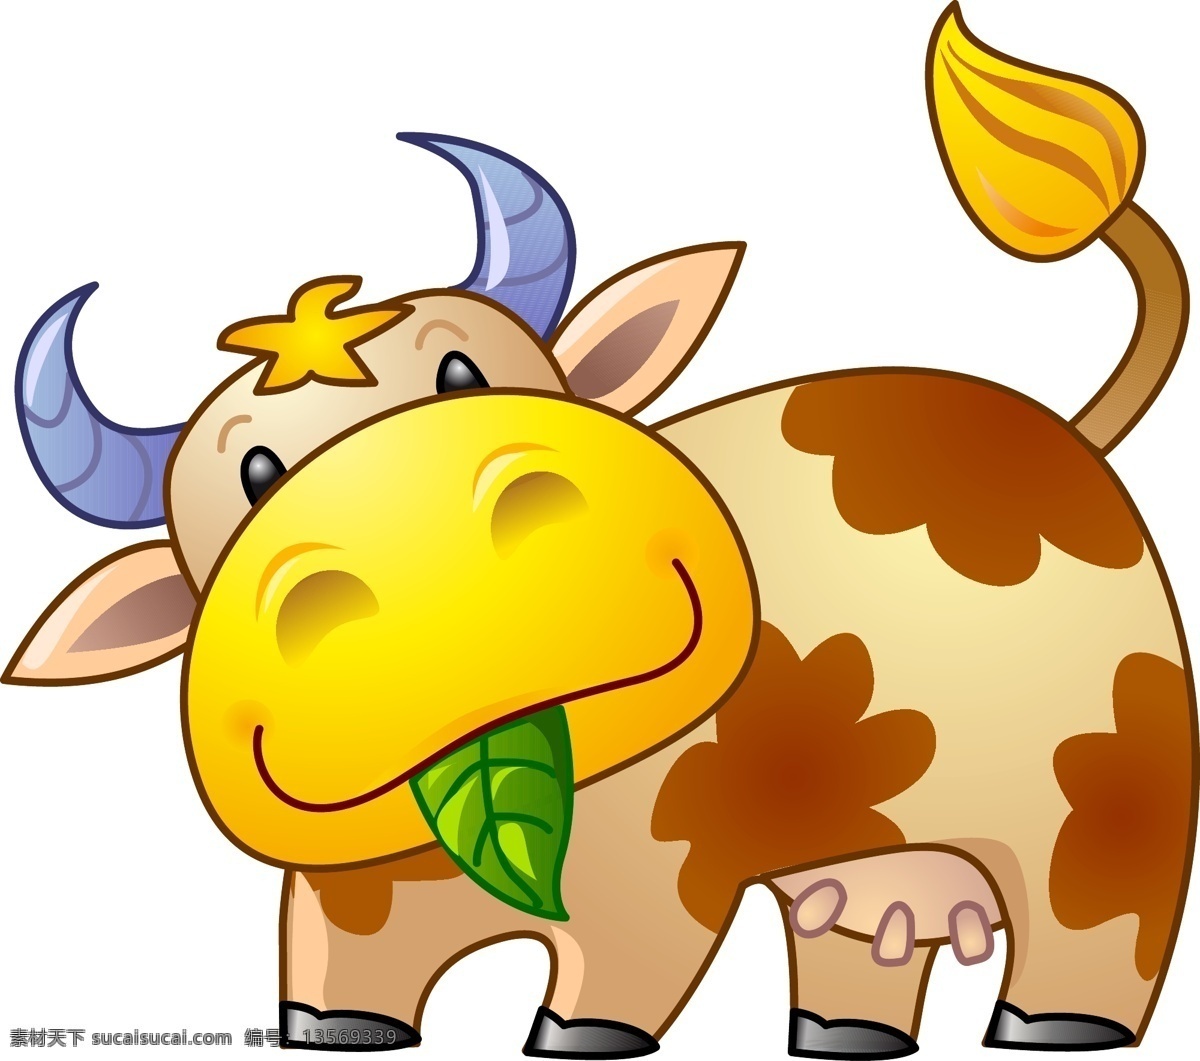 老牛 黄牛 老牛吃草 卡通动物 动画片 儿童 通话 可爱 小动物 野生动物 动物卡通 卡通世界 卡通设计 艺术设计 矢量